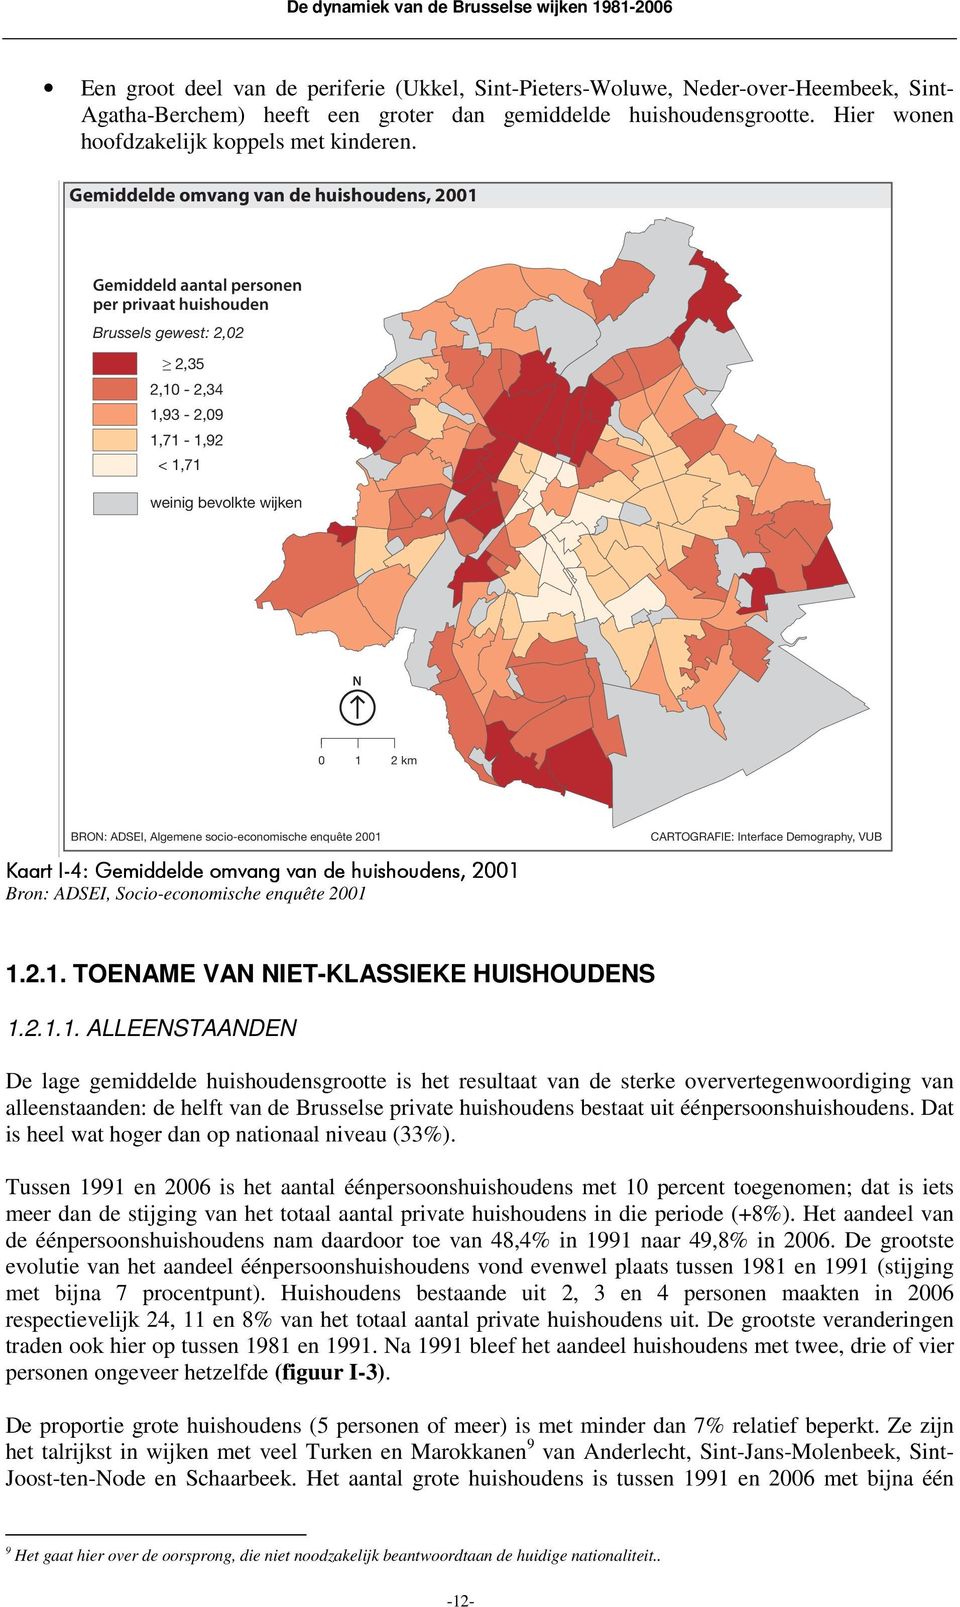 Gemiddelde omvang van de huishoudens, 2001 Gemiddeld aantal personen per privaat huishouden Brussels gewest: 2,02 2,35 2,10-2,34 1,93-2,09 1,71-1,92 < 1,71 weinig bevolkte wijken N 0 1 2 km BRON: